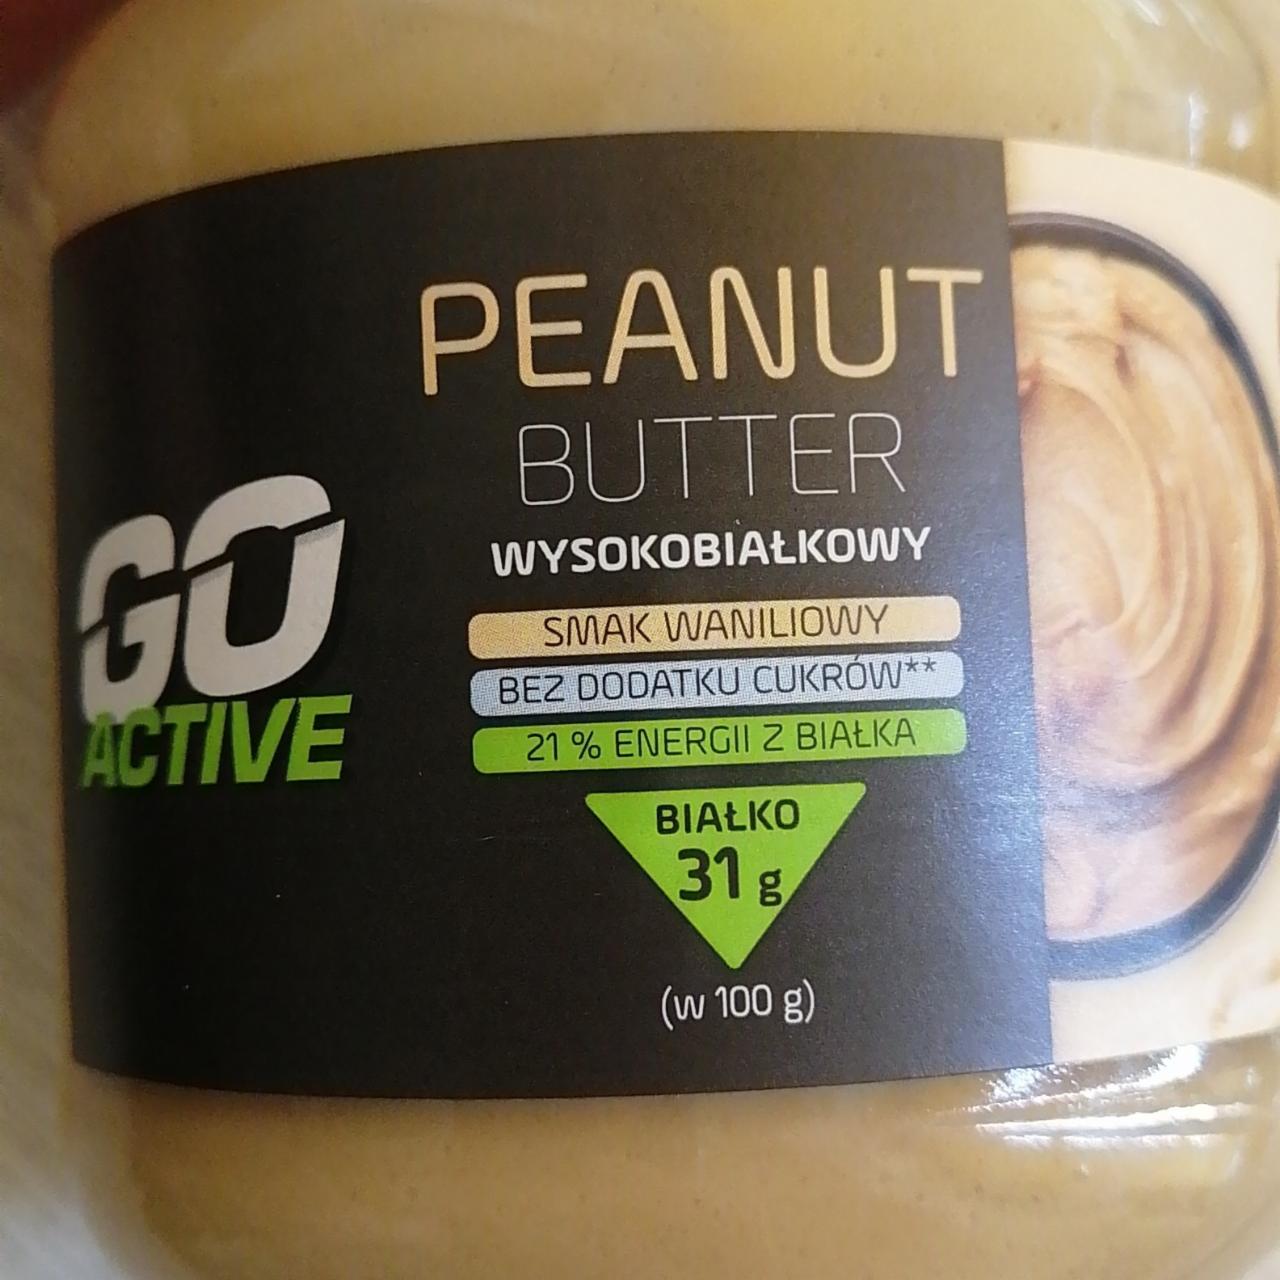 Zdjęcia - Peanut butter wysokobiałkowy Go Active